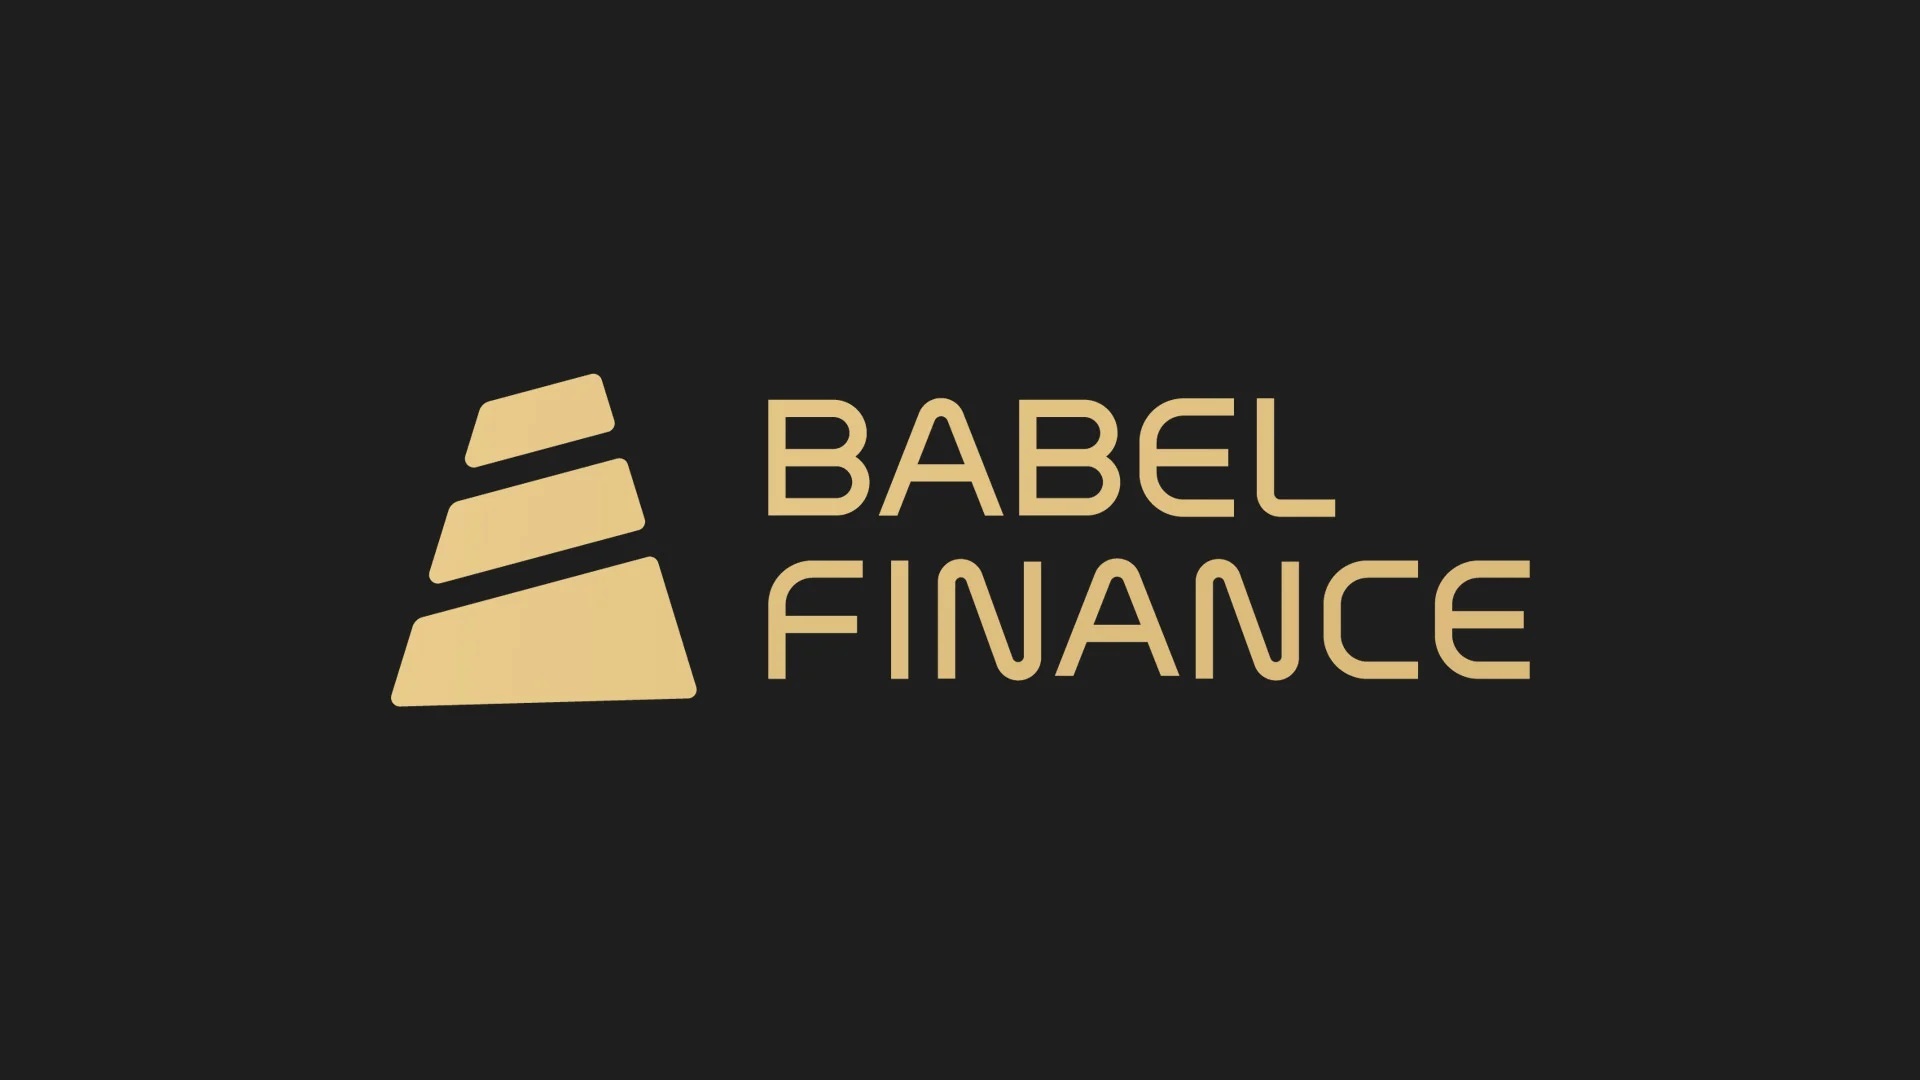 Babel Finance Trở Thành Nền Tảng Lending Mới Nhất Chặn Rút Tiền